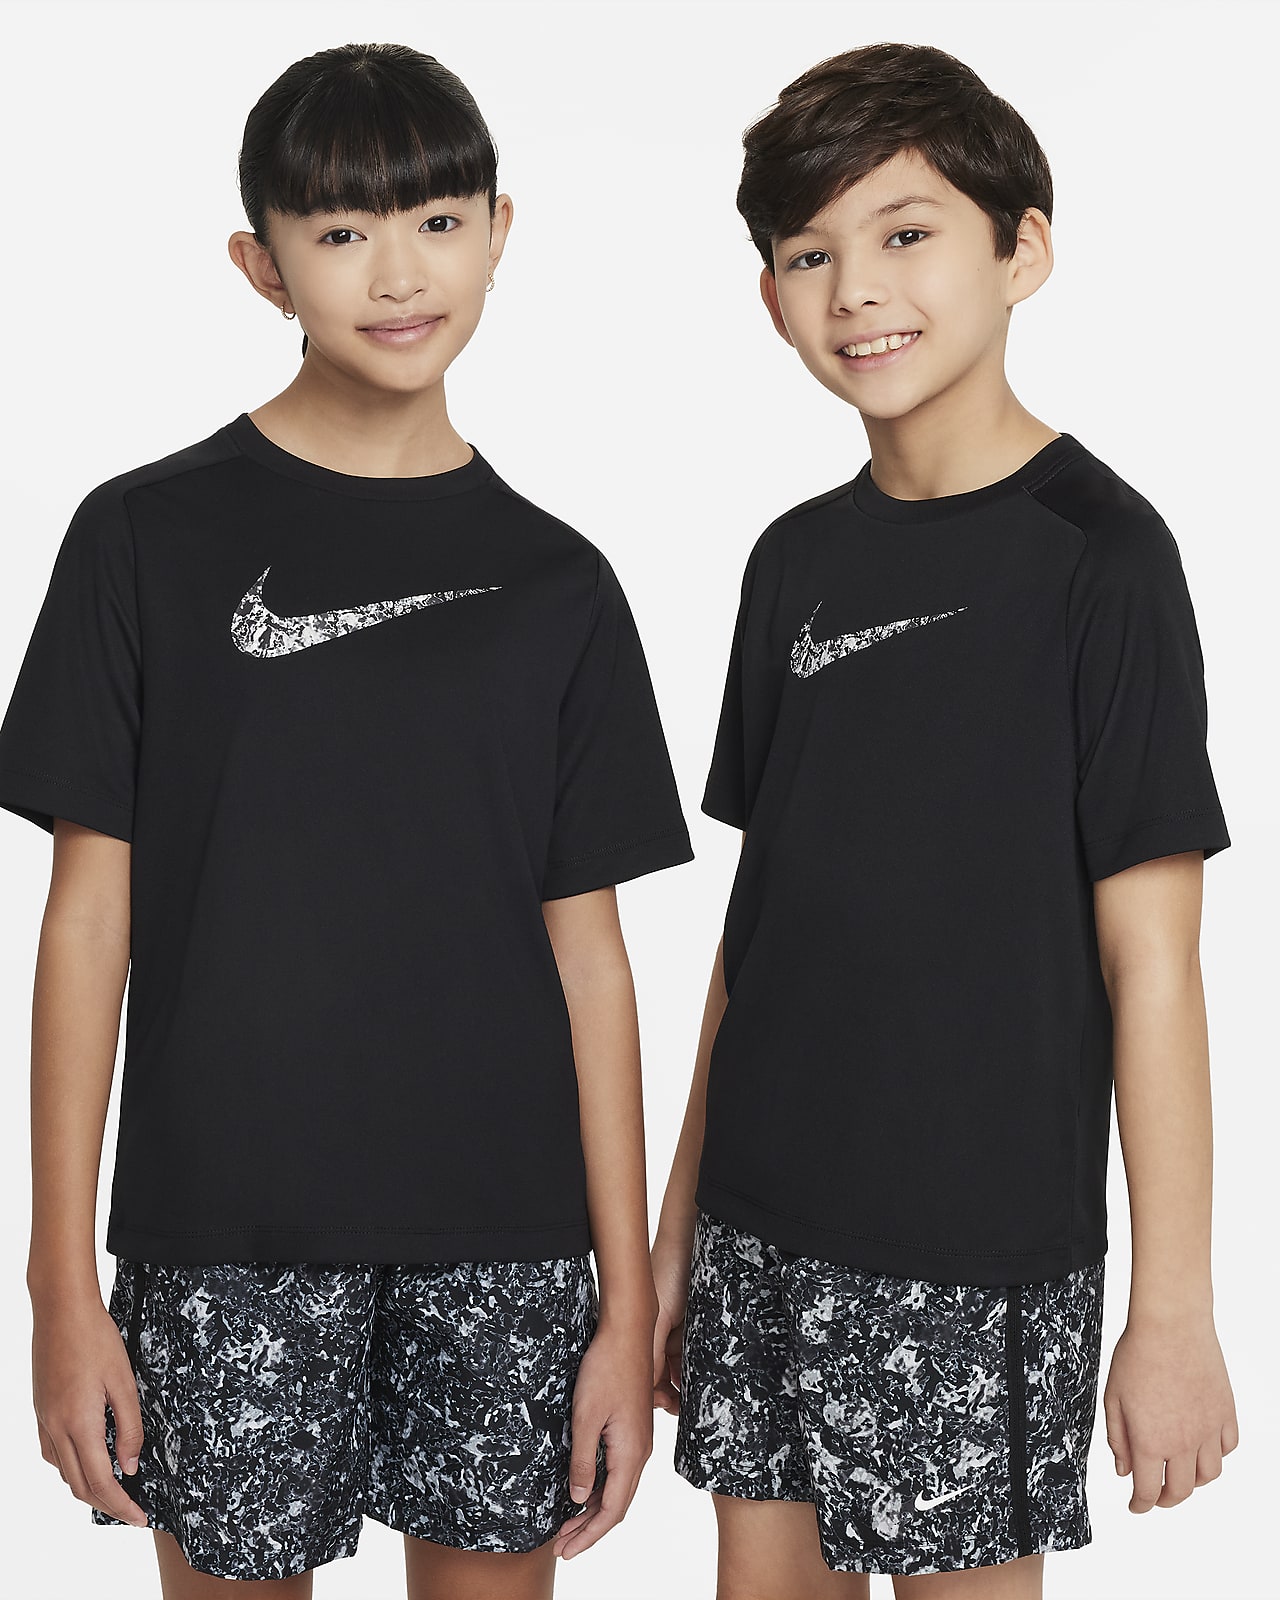 Nike Multi Older Kids' Dri-FIT Short-Sleeve Top